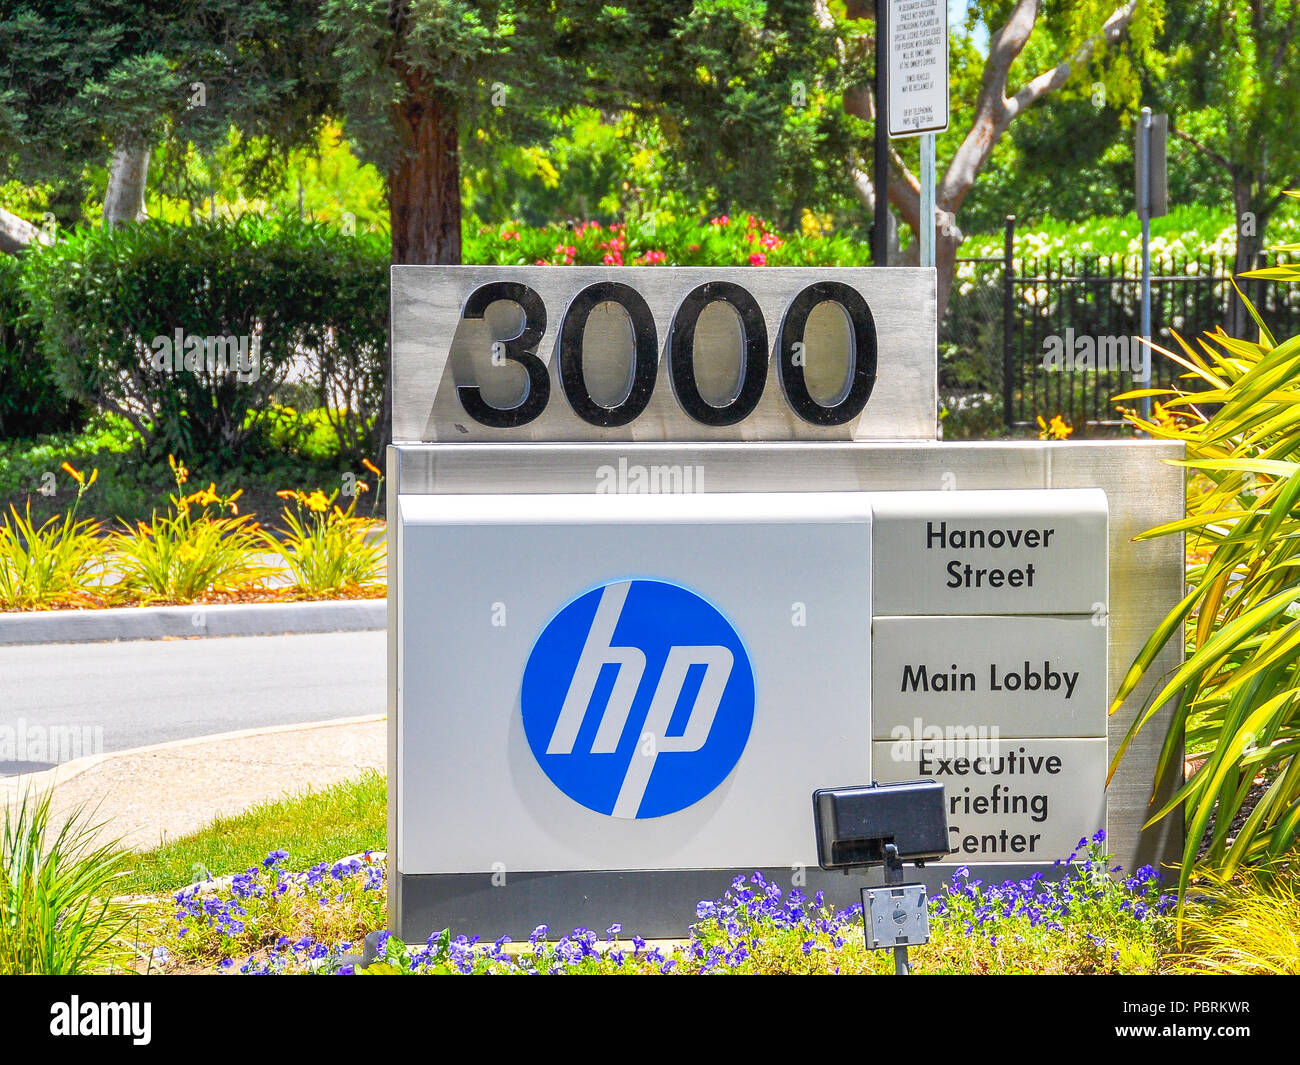 Palo Alto, CA, USA - 28 juin 2015 : Siège de Hewlett-Packard. Hewlett-Packard est une multinationale américaine entreprise de technologie de l'information. Banque D'Images